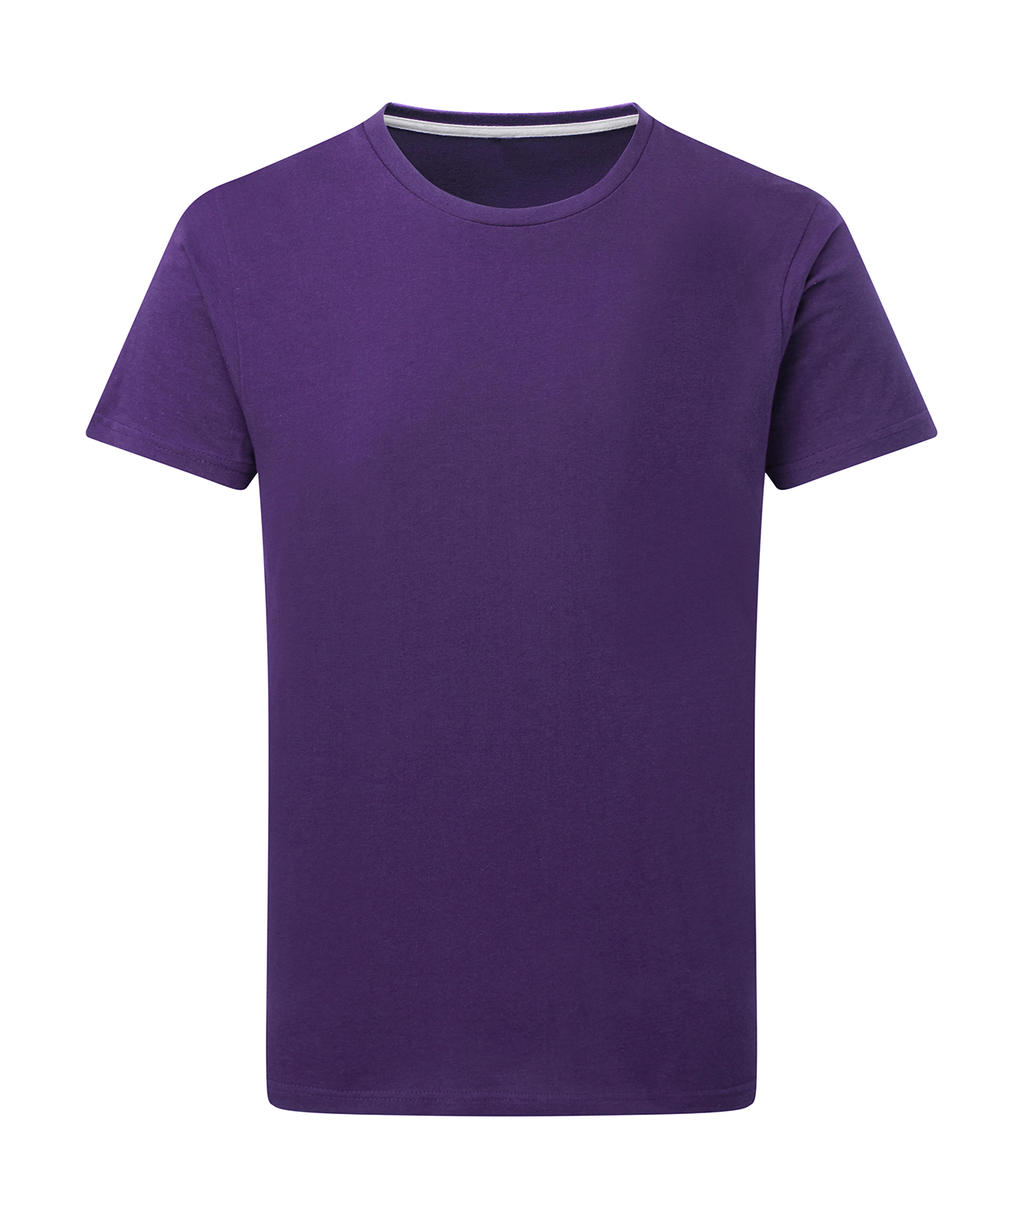 Dokonale potlačiteľné tričko bez štítku - purple